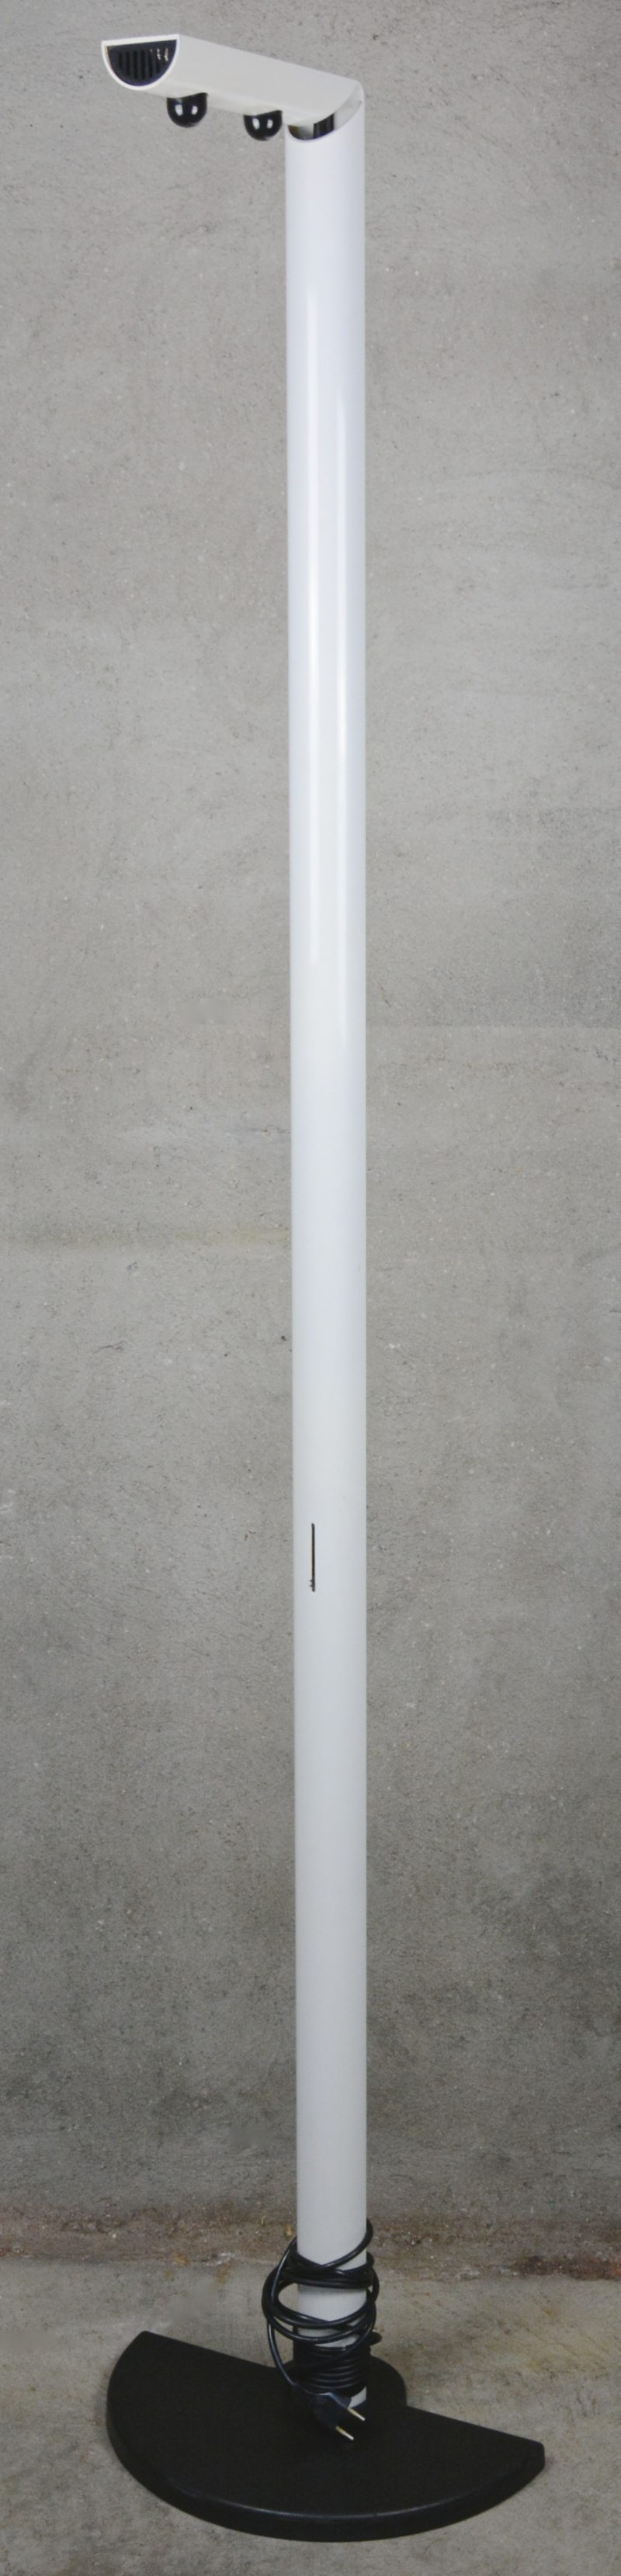 Een dimbare staande designlamp van wit en zwart metaal. Model ‘Ignazio’ naar ontwerp van G.F. Frattini.